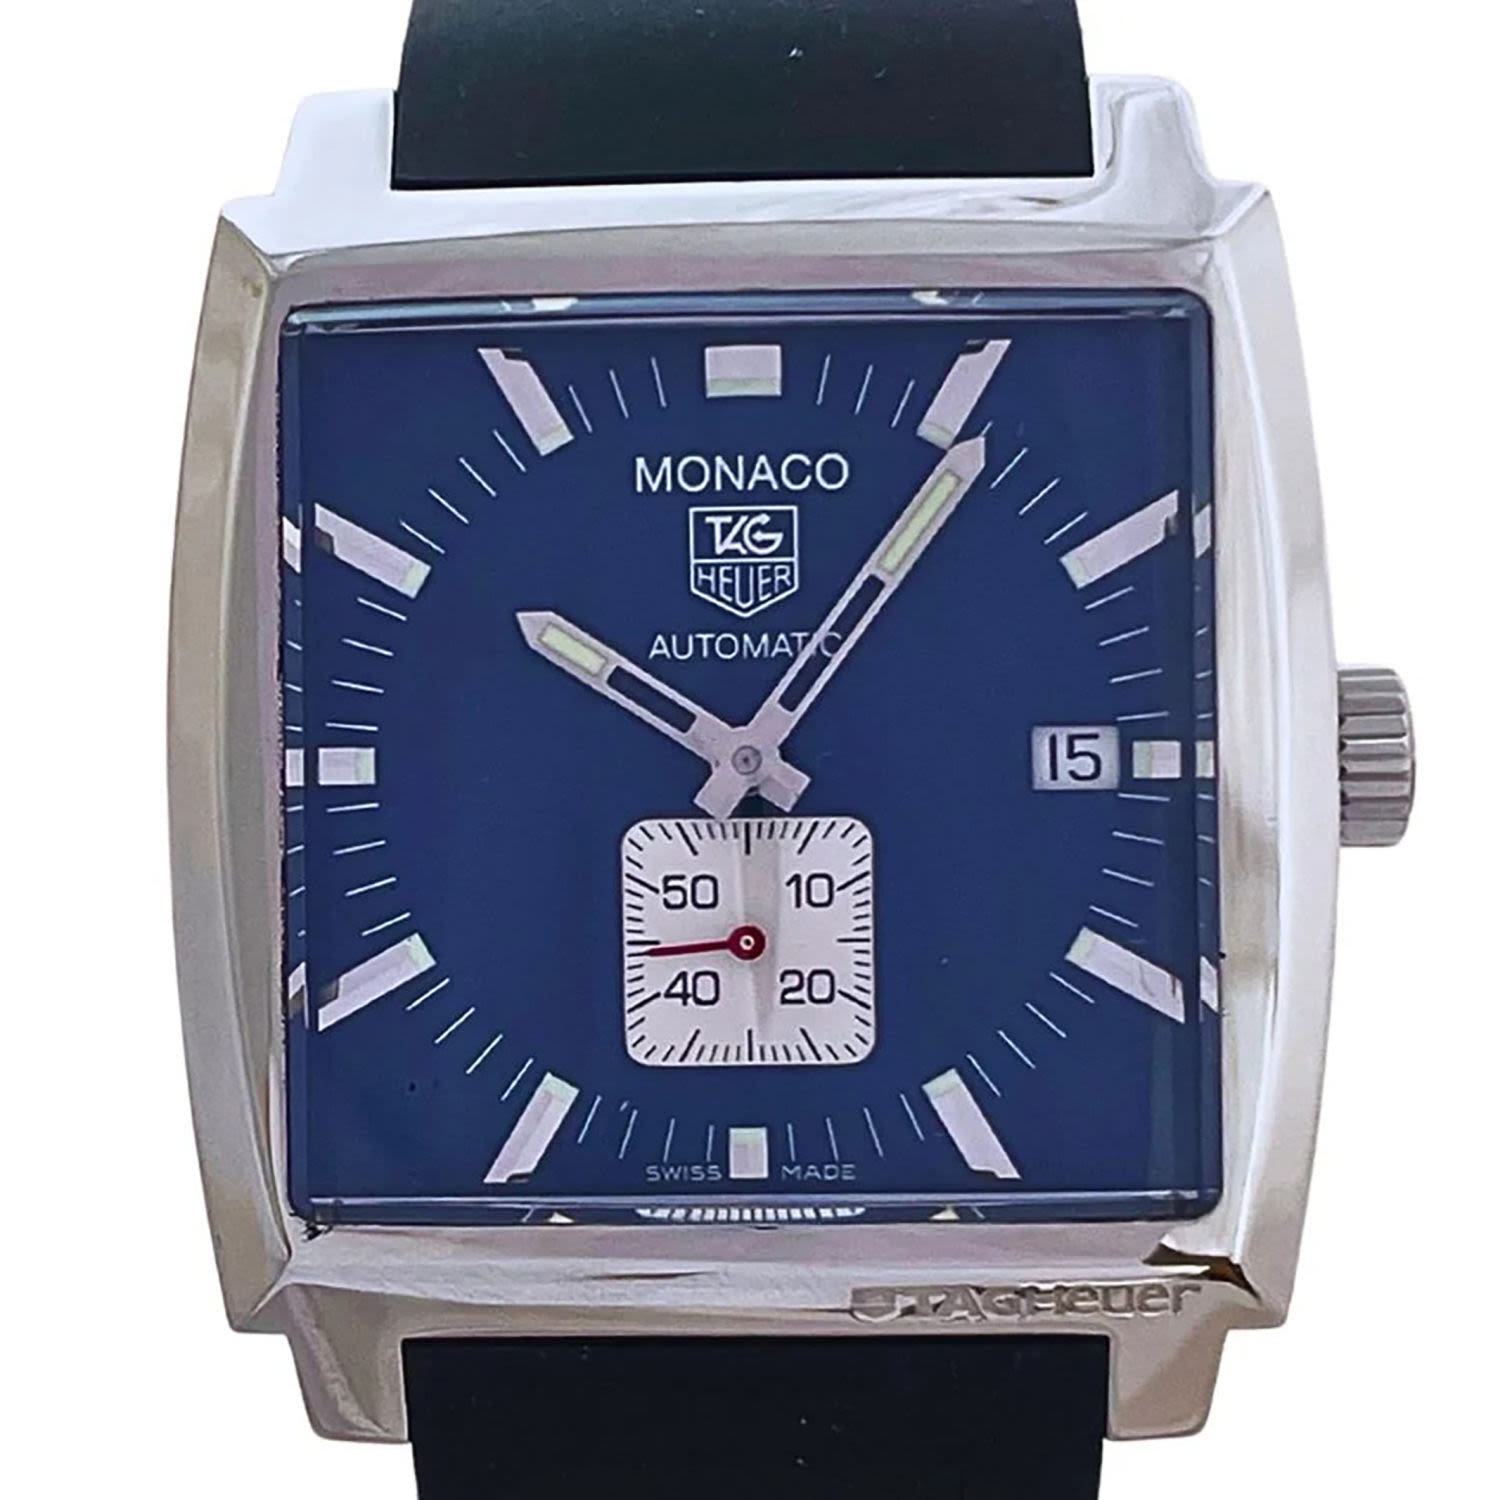 Tag Heuer Monaco Deep Blue model wristwatch in steel, for men, year 2007 - Image 2 of 7